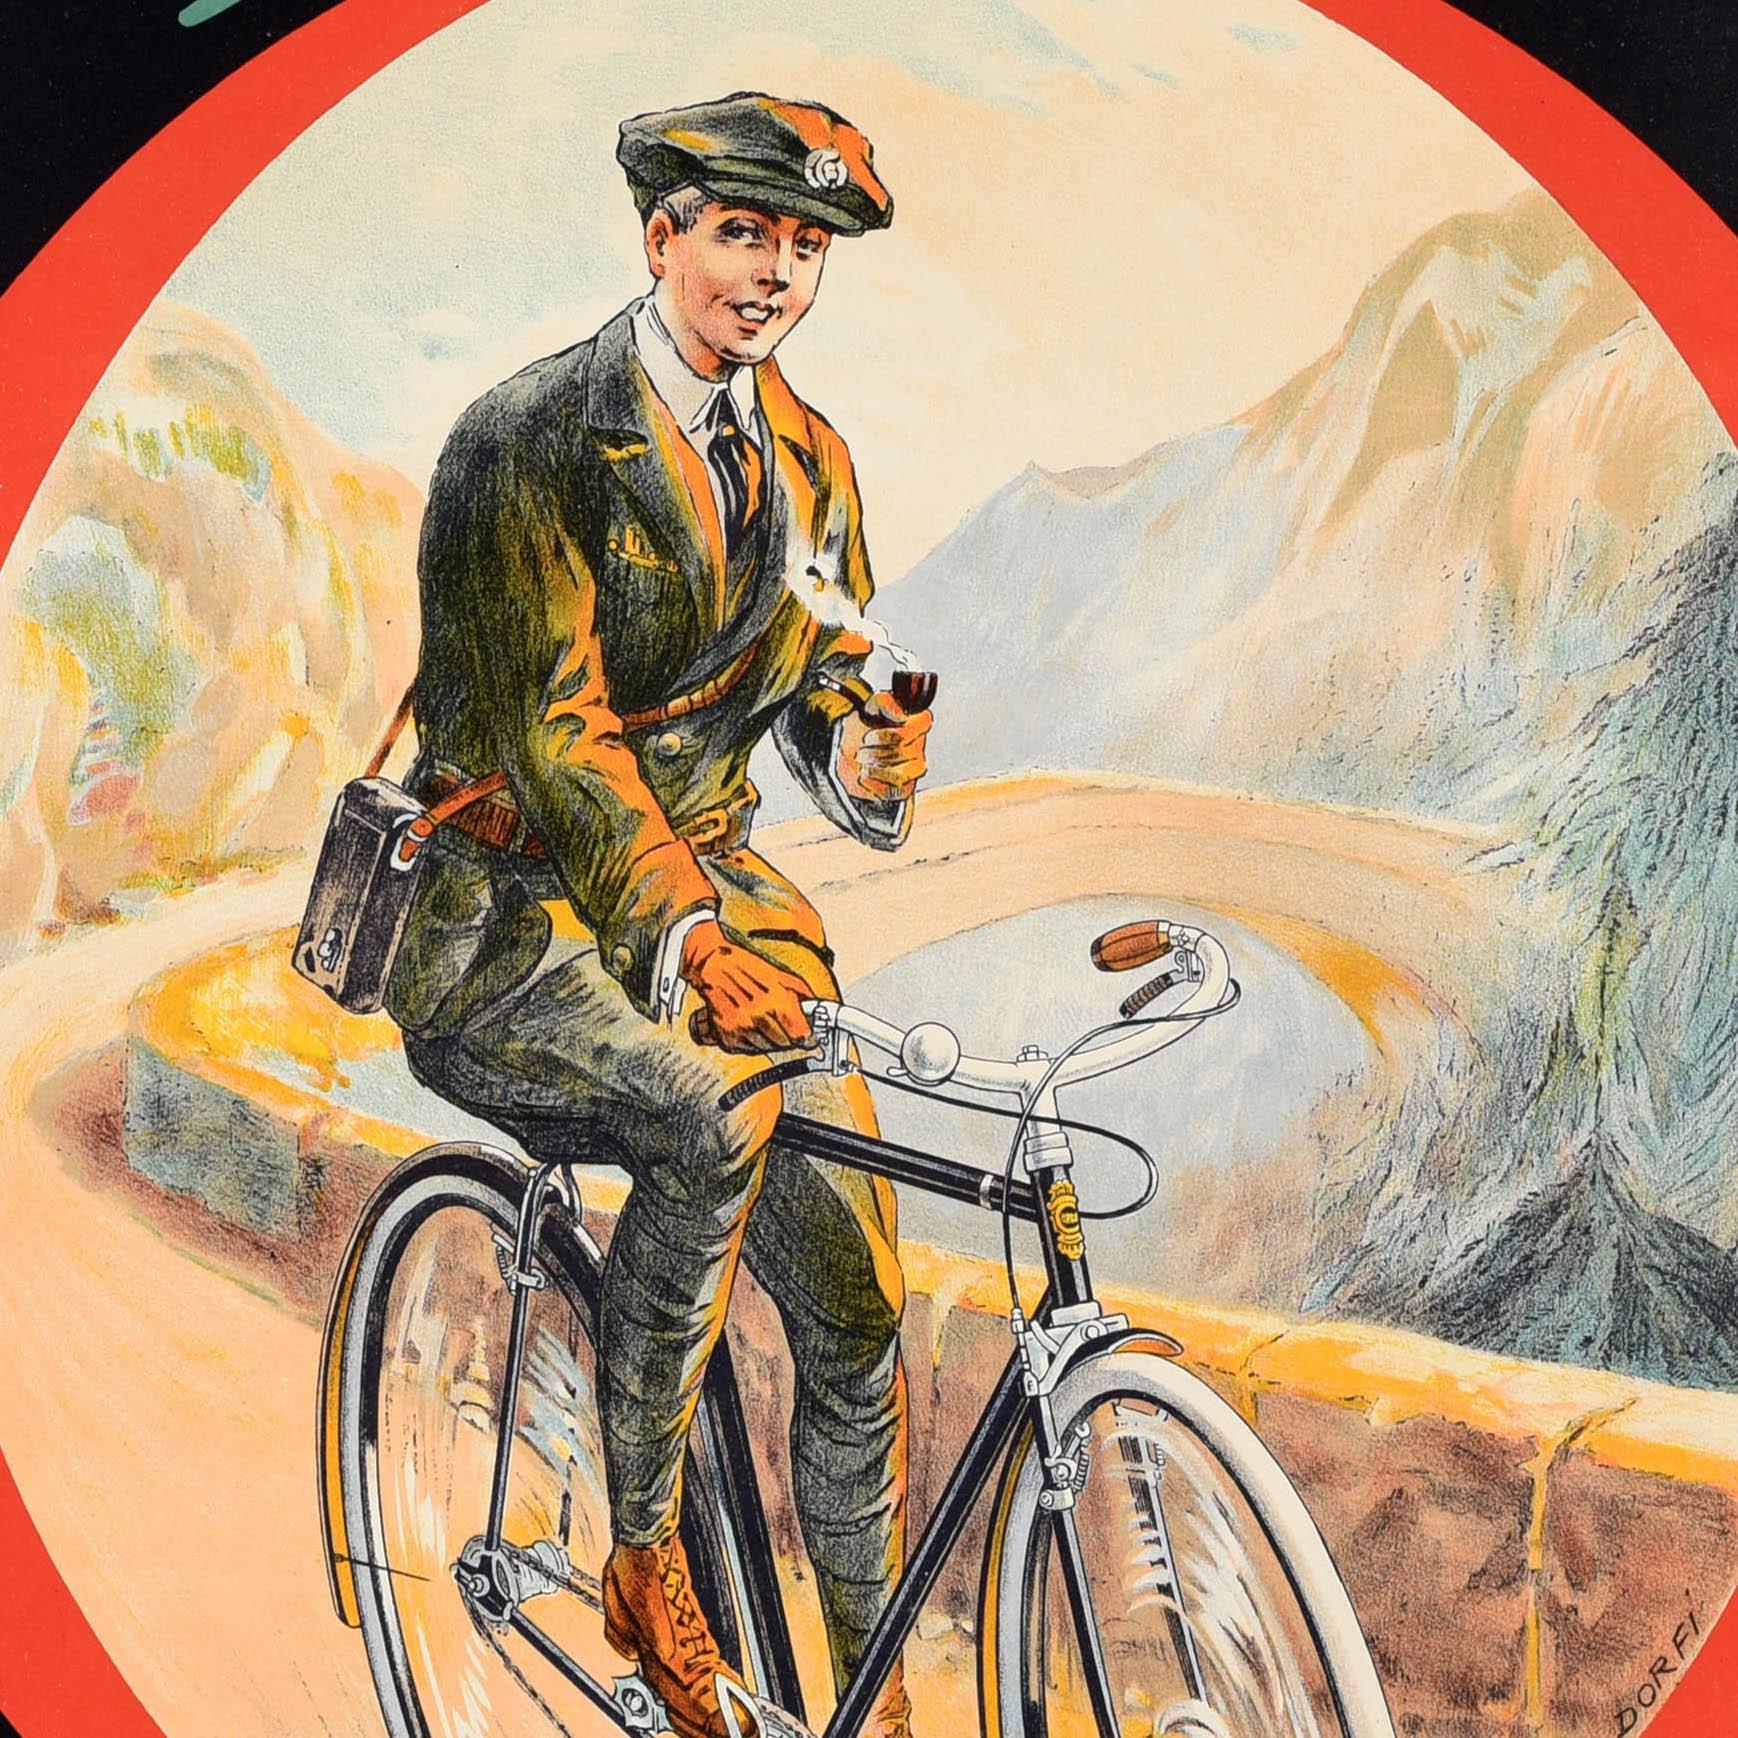 Original Vintage Fahrrad-Werbeplakat für Omega Cycles mit szenischen Kunstwerken von Dorfi (Albert Dorfinant; 1881-1976), die einen Mann zeigen, der eine Pfeife raucht und auf einem Fahrrad entlang einer Bergstraße vor Bäumen und Bergen mit einer